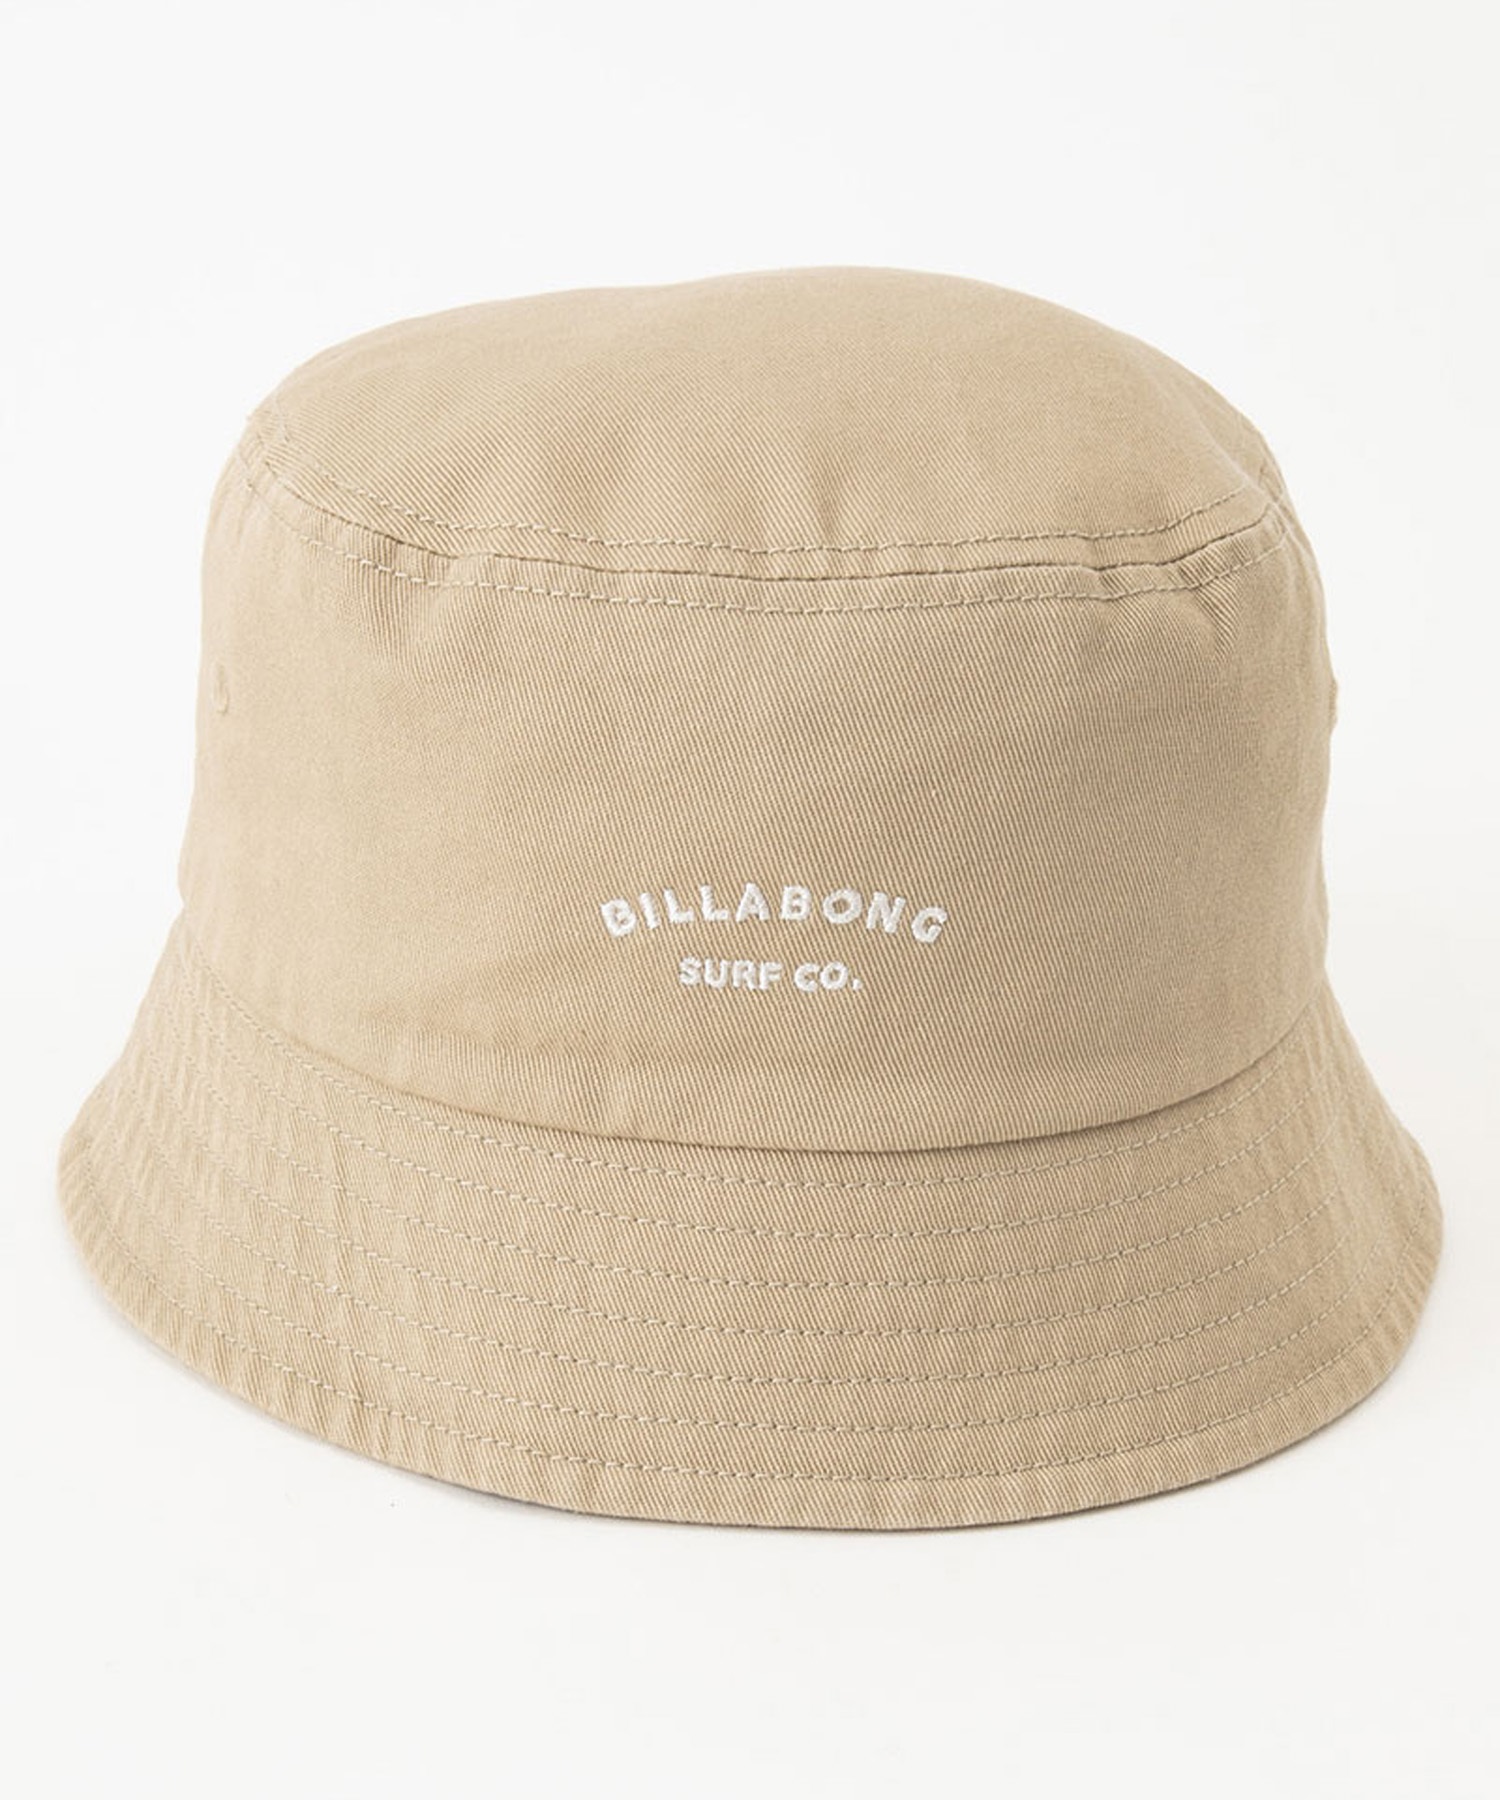 BILLABONG ビラボン BUCKET 2WAY HAT バケットハット バケハ 帽子 BE013-914(BLK-FREE)